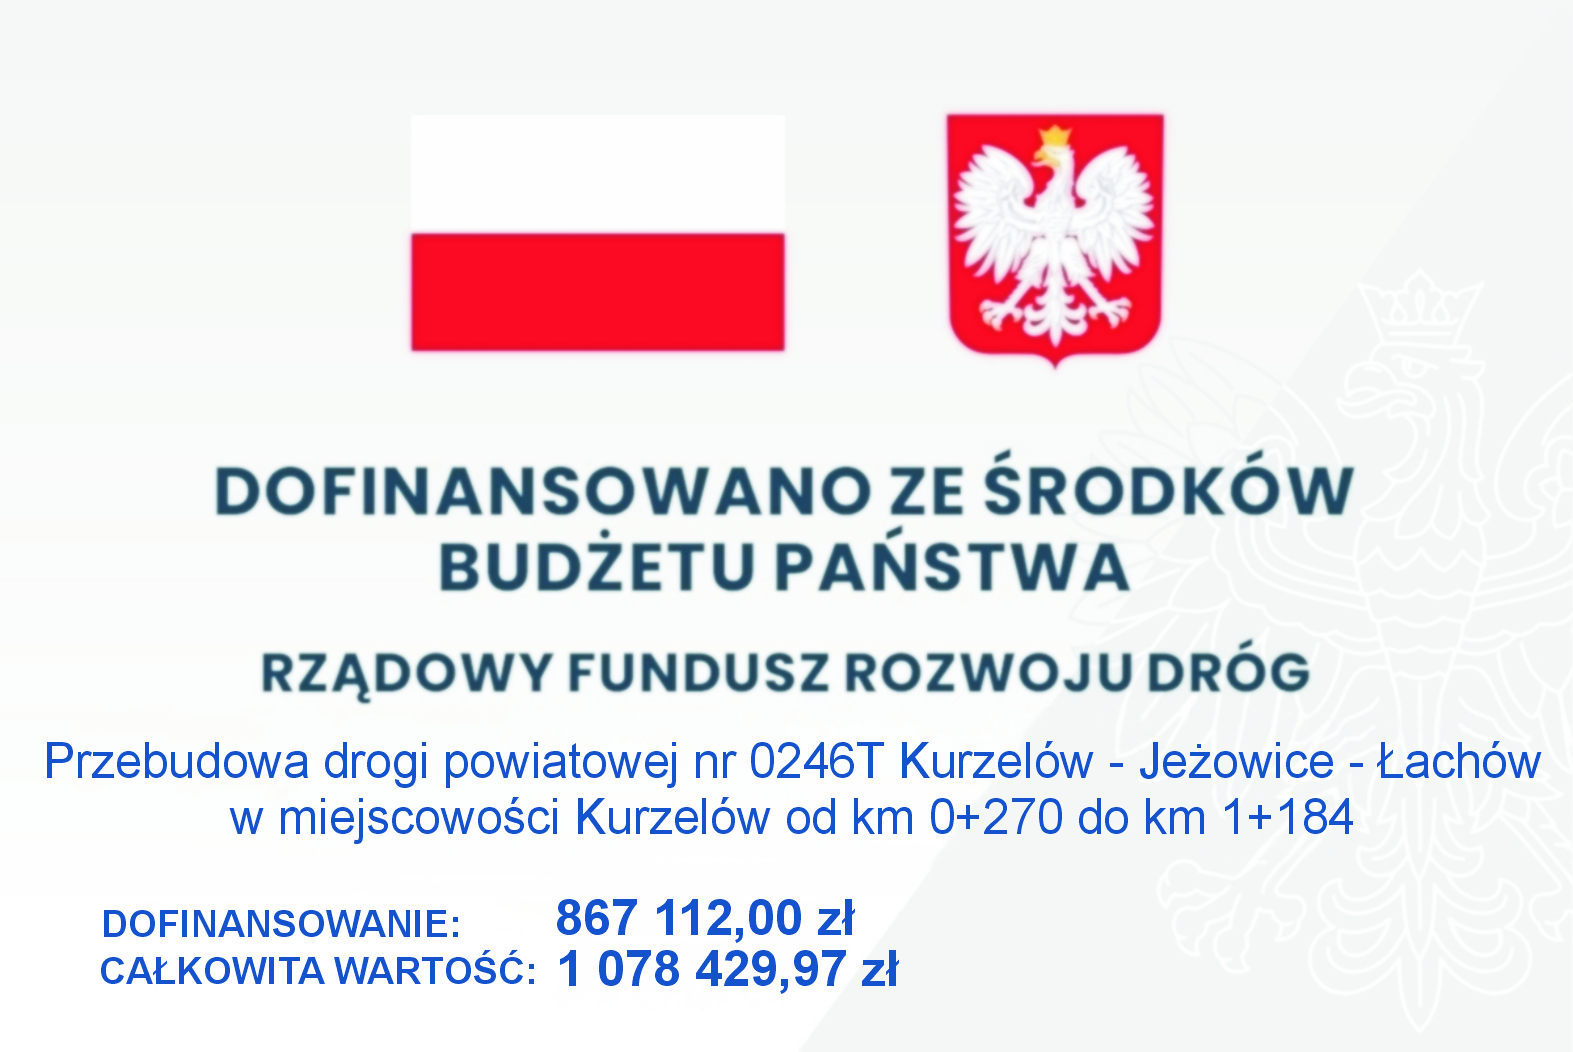 tablica-dofinansowanieDrogi-wKurzelowie1-2021